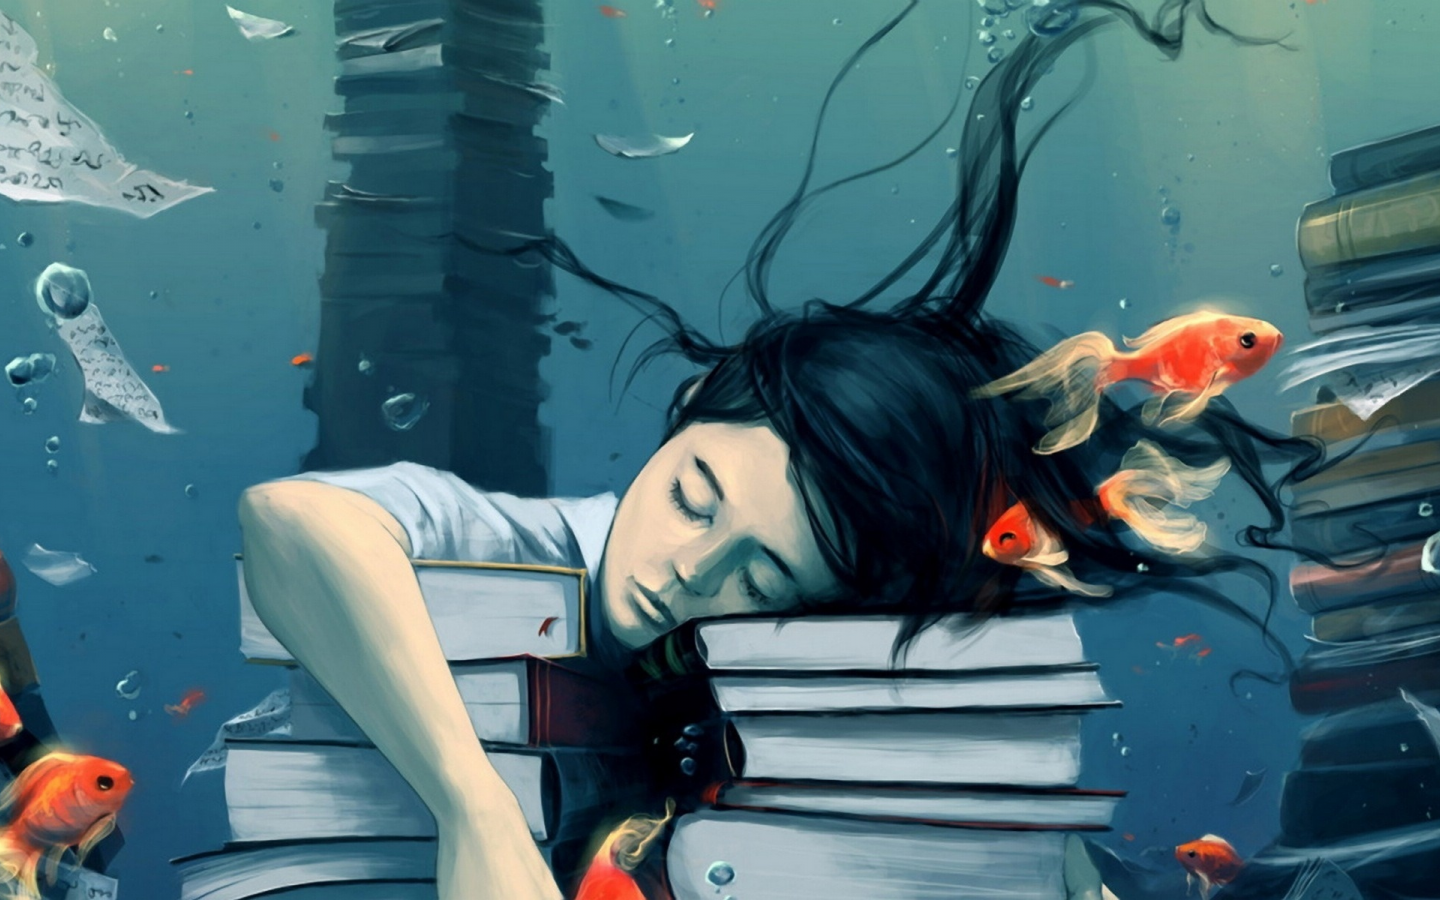 вода, книги, рыбки, учеба, девушка, спокойствие, пузыри, мечты, сон